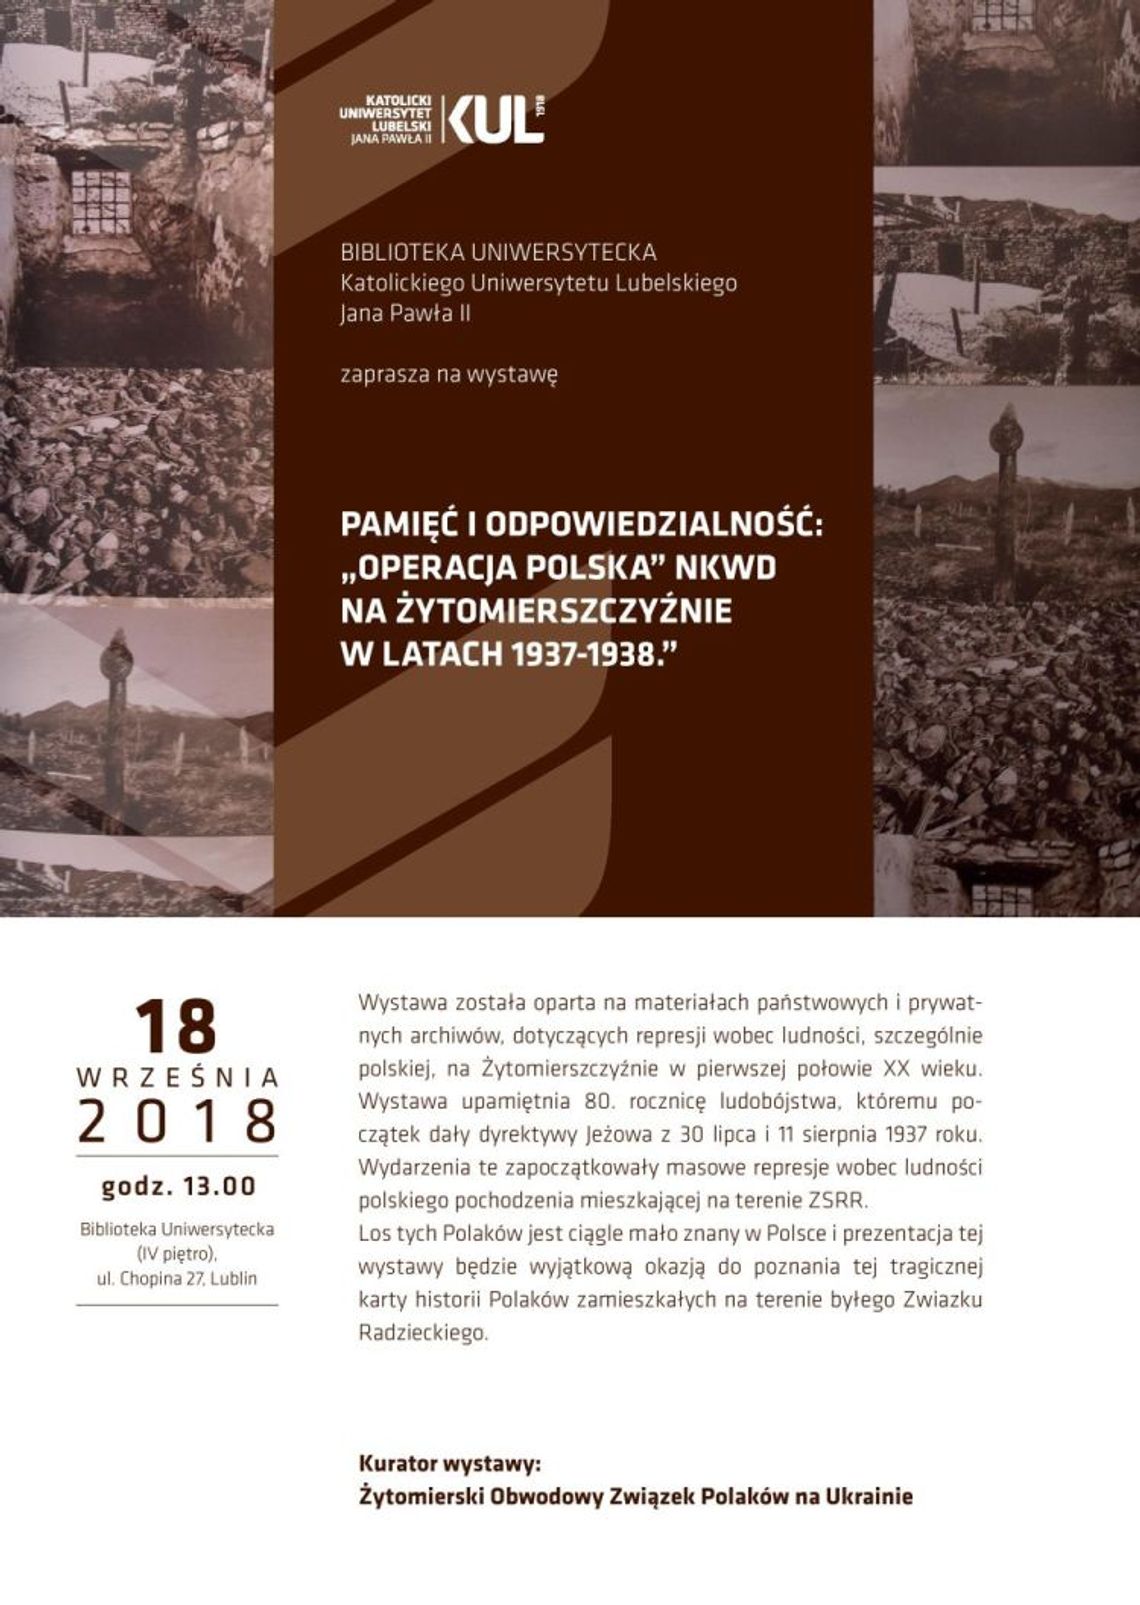 "Operacja polska" NKWD na Żytomierszczyźnie" - wystawa 